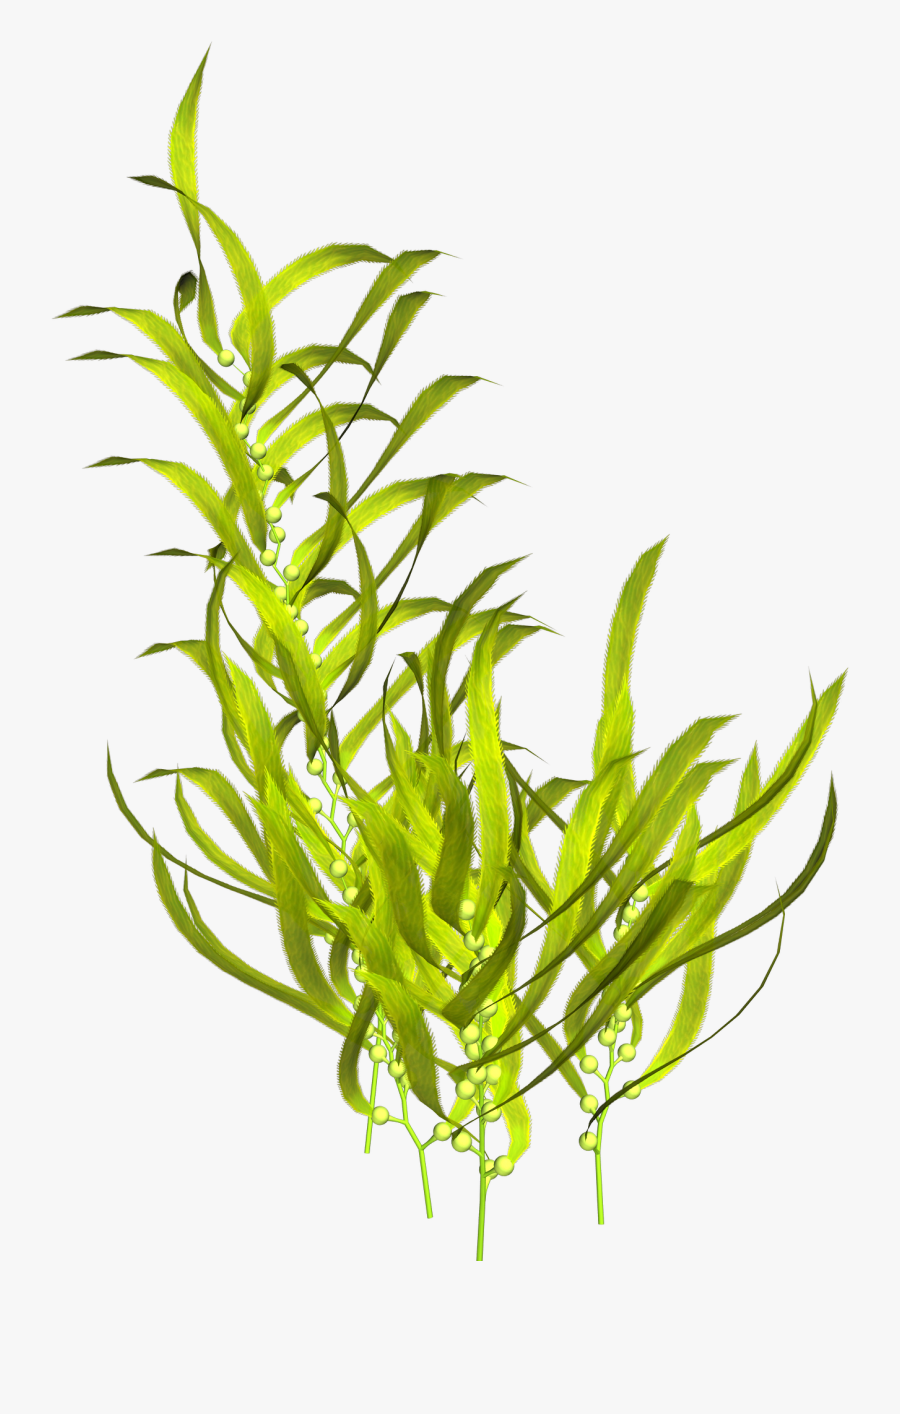 Seaweed Aquatic Plants Clip Art - Transparent Background Aquatic Plants Png, Transparent Clipart